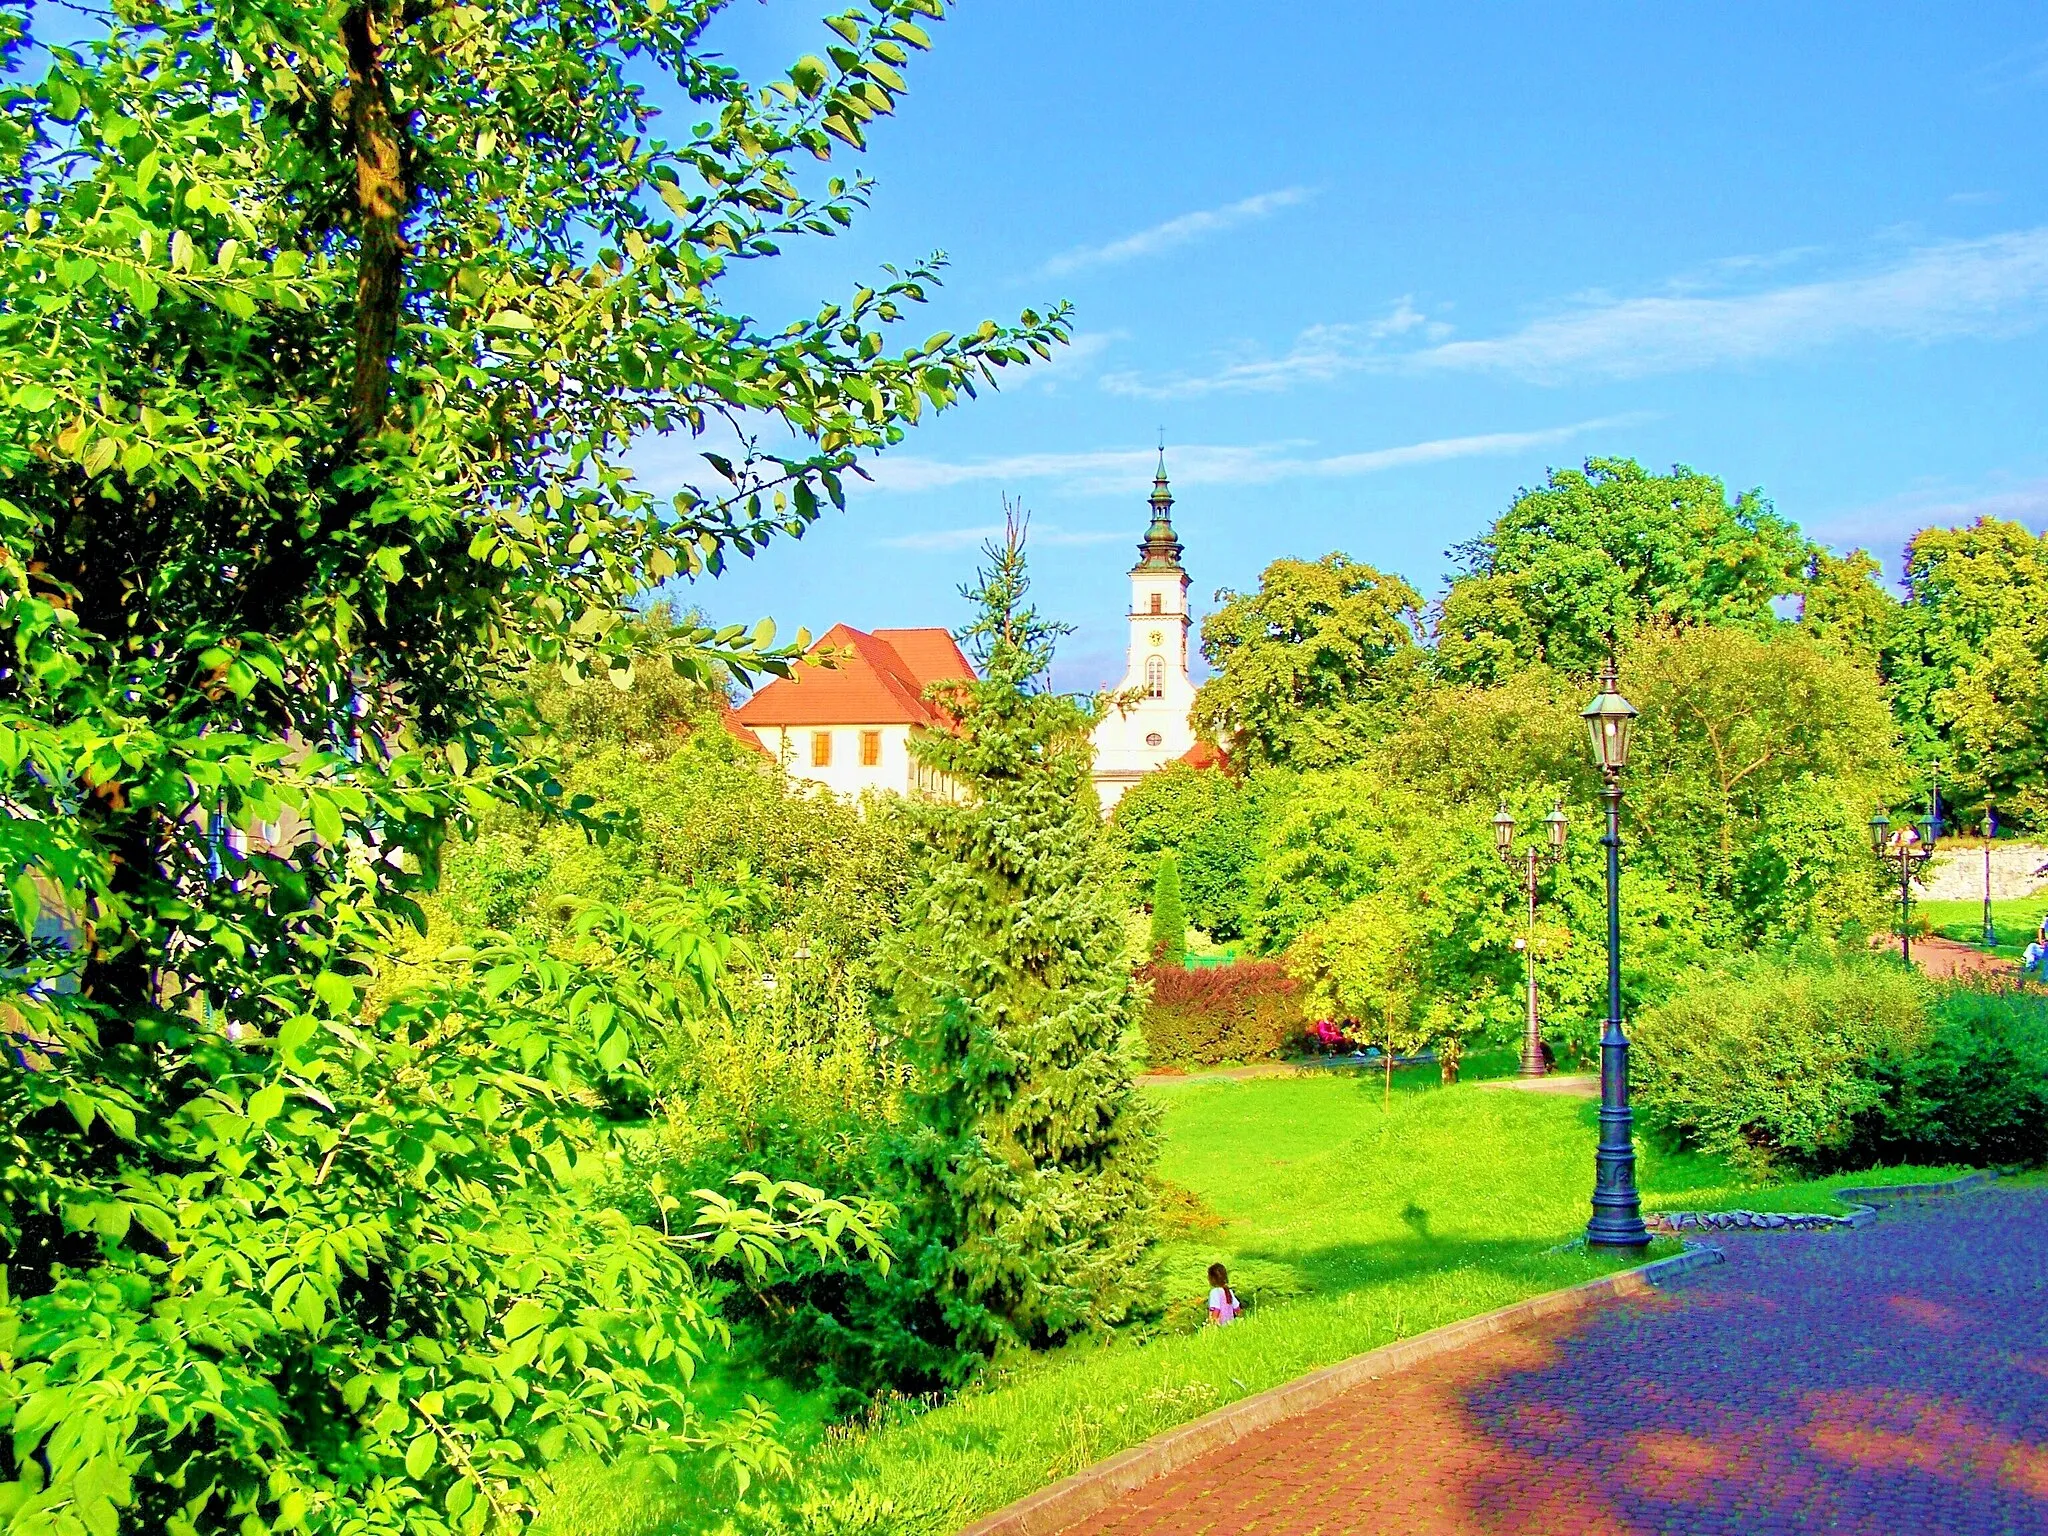 Image of Wieliczka